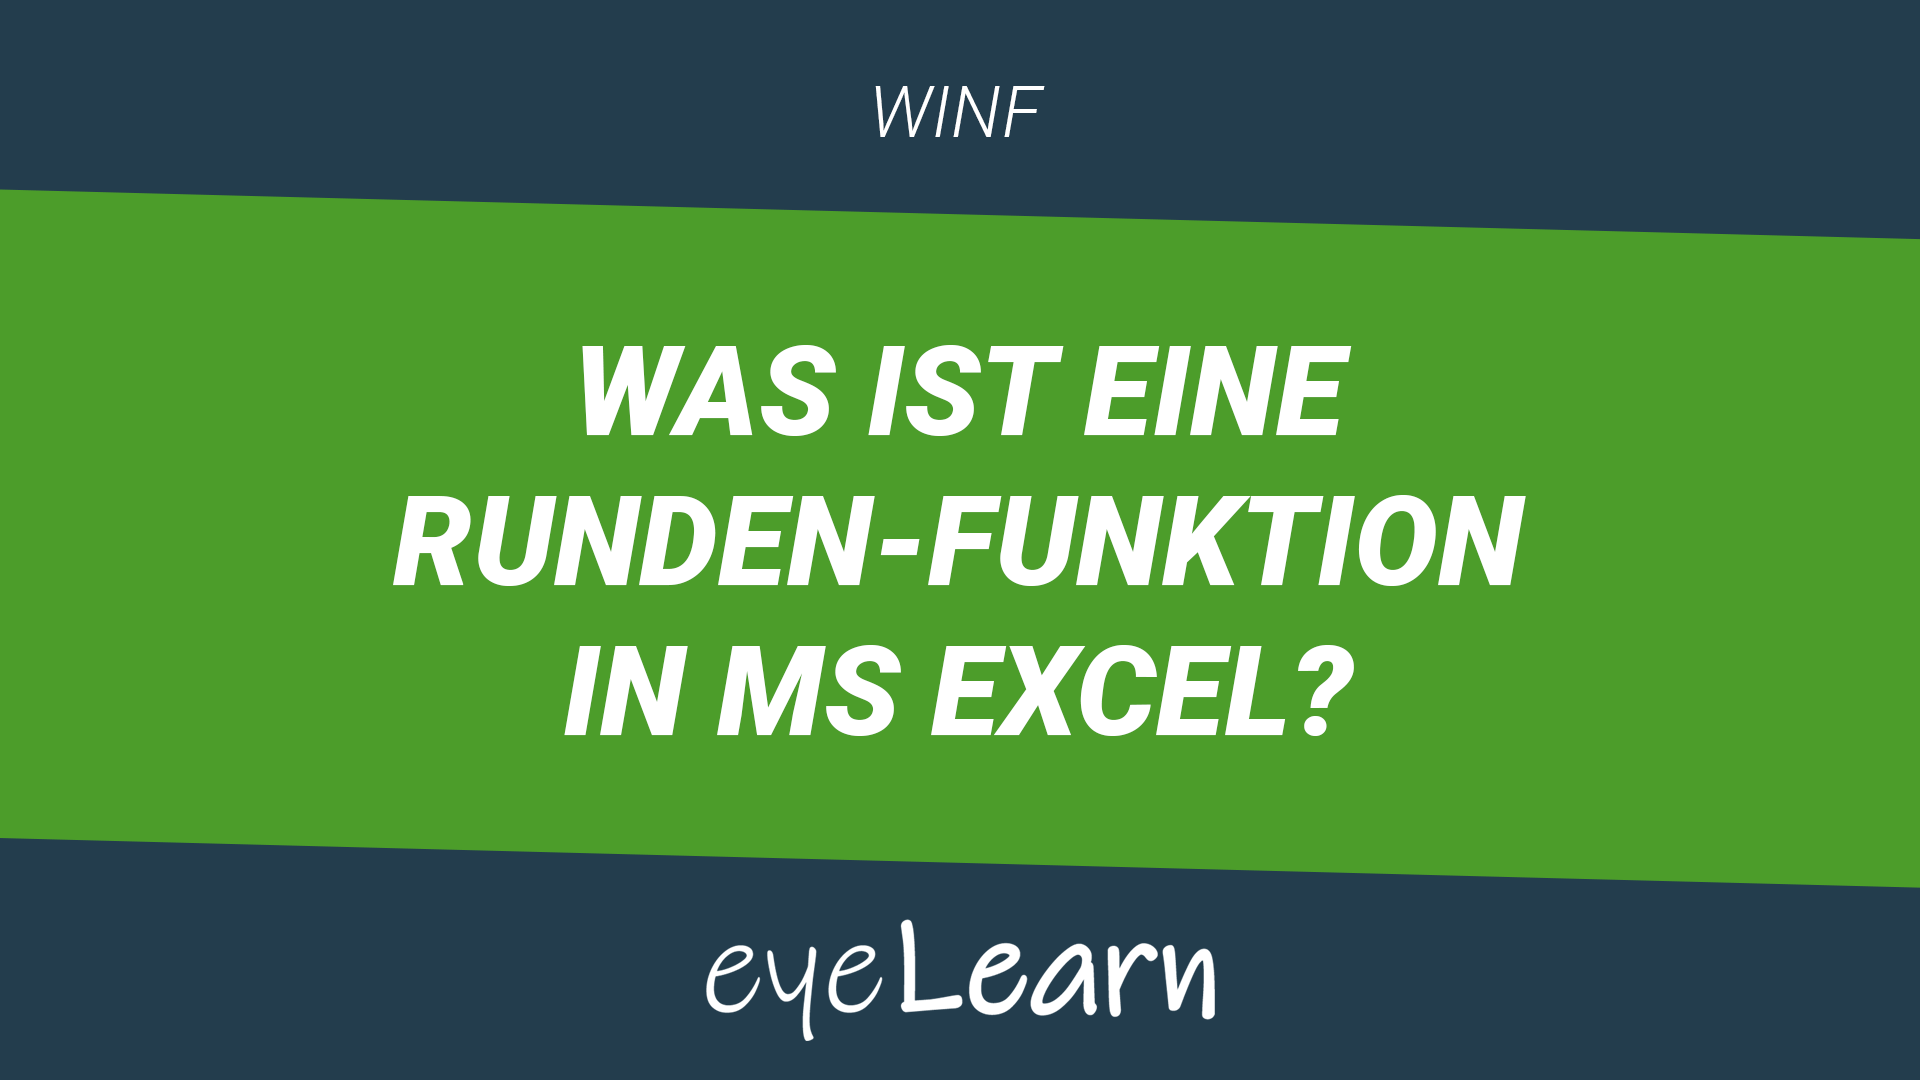 Was ist eine RUNDEN-Funktion in MS Excel?